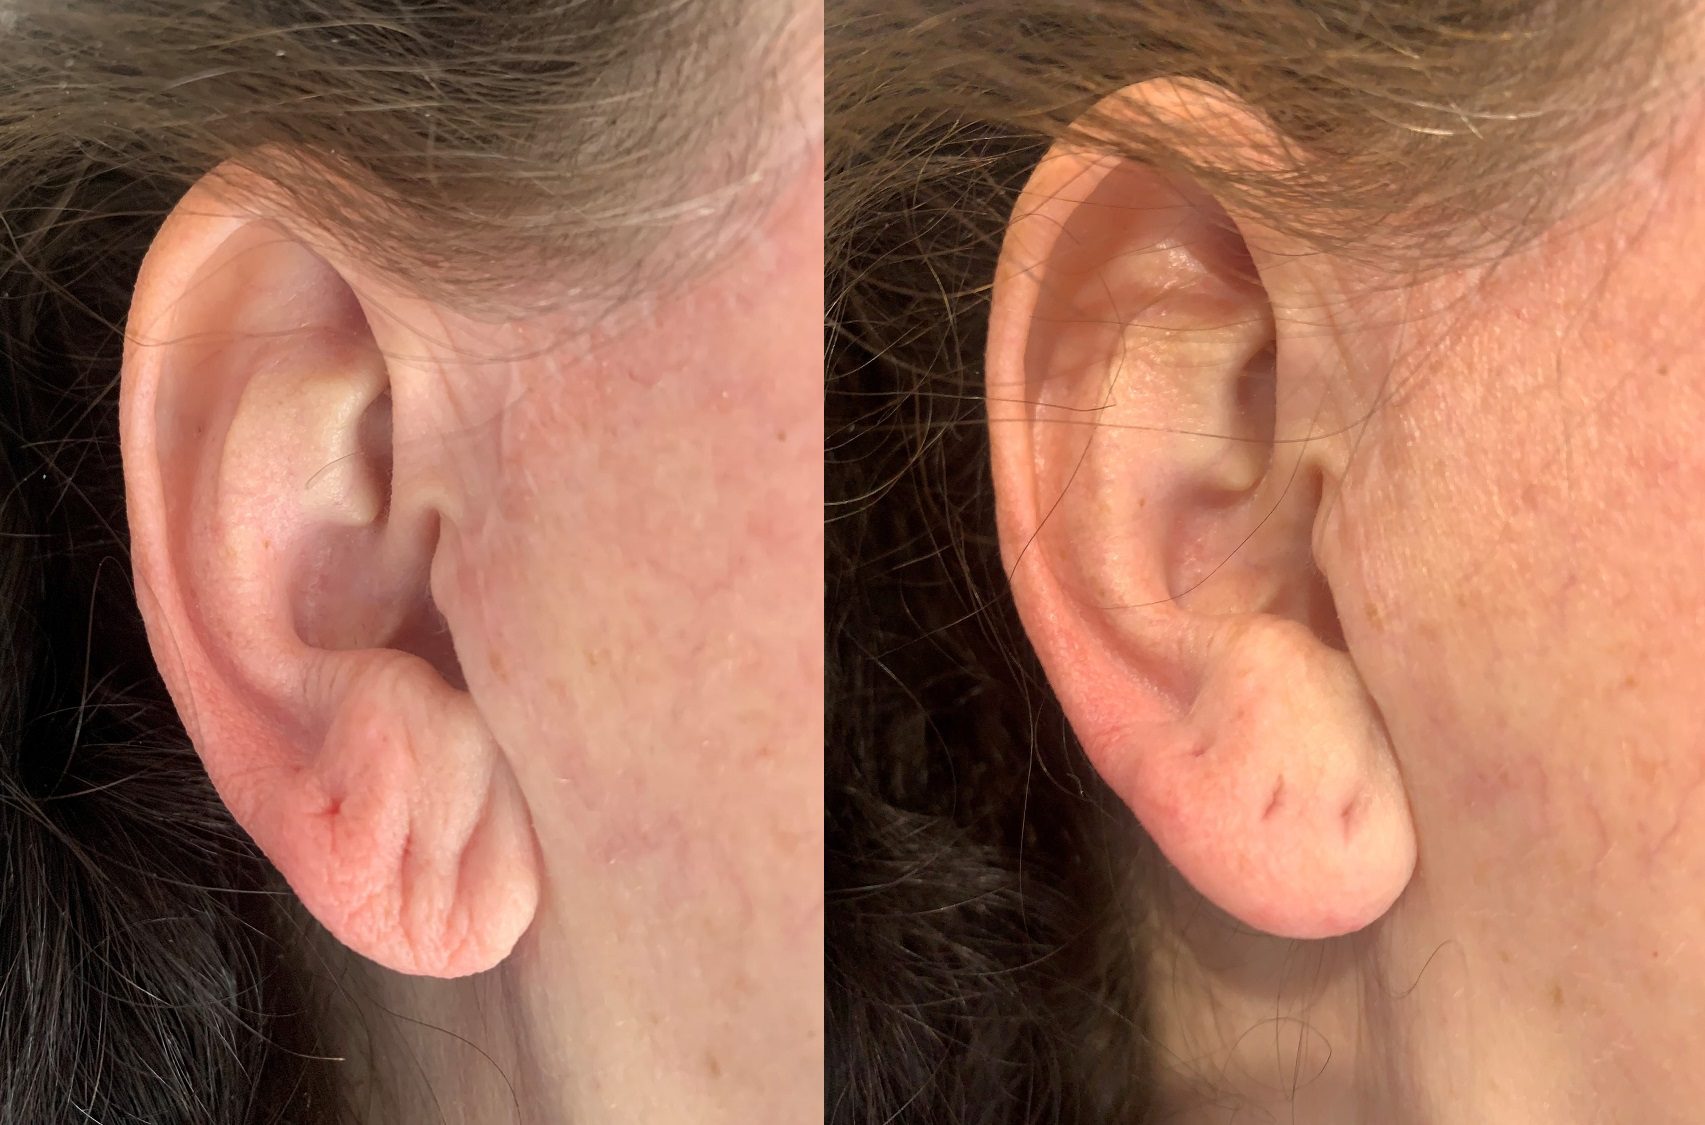 Hyaluronic acid filler for earlobe rejuvenation before and after